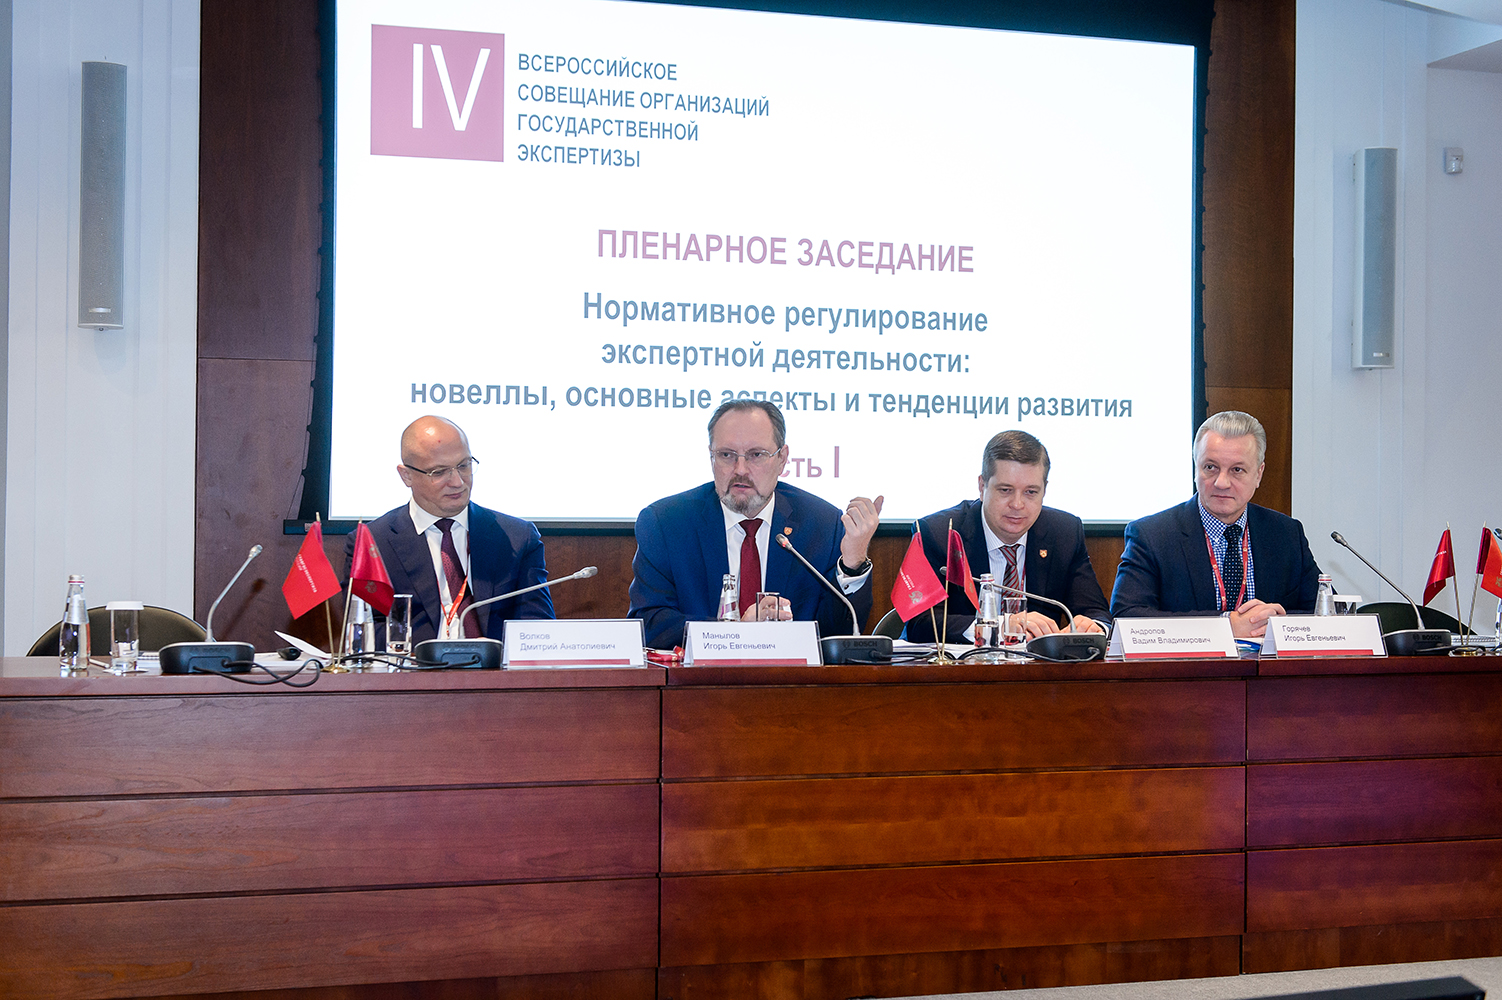 Состоялось VI Всероссийское совещание организаций государственной экспертизы